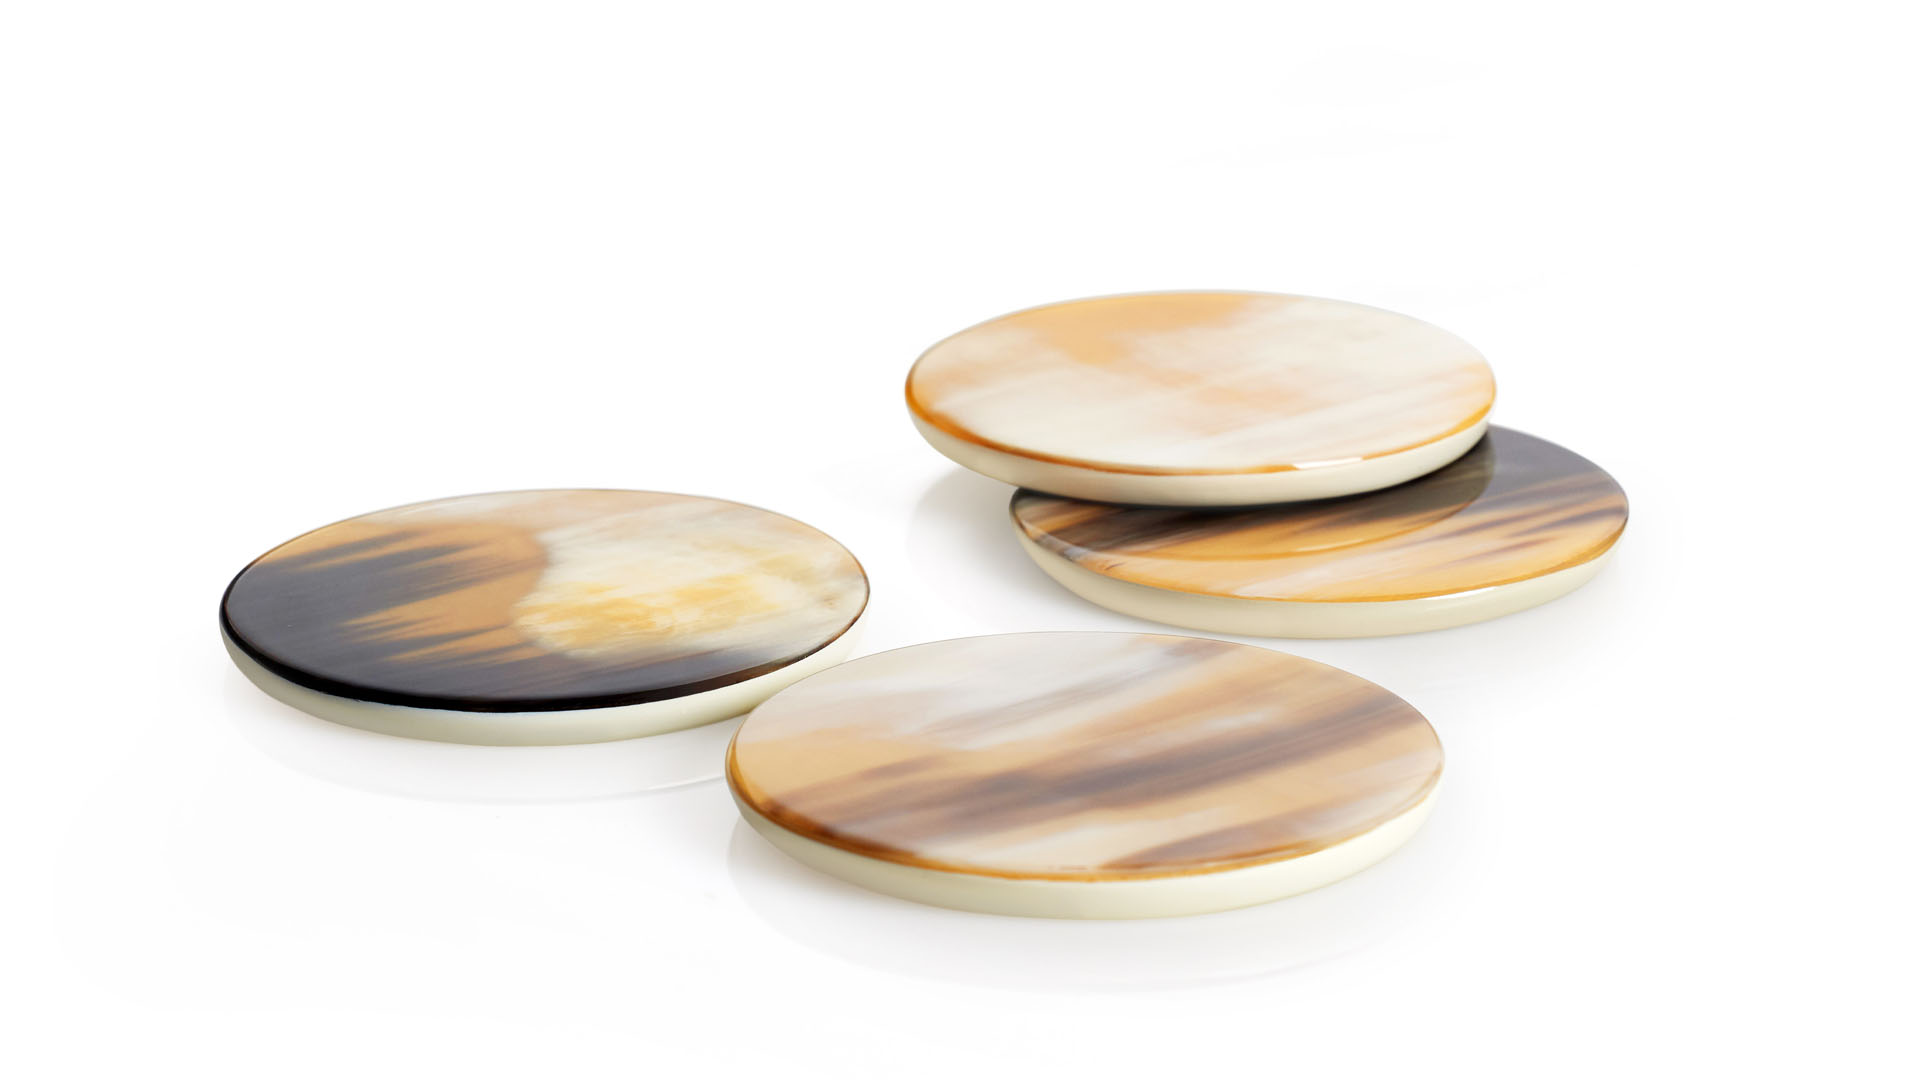 Accessori tavola - Chelsea Round sottobicchiere in corno e legno laccato avorio lucido - copertina - Arcahorn